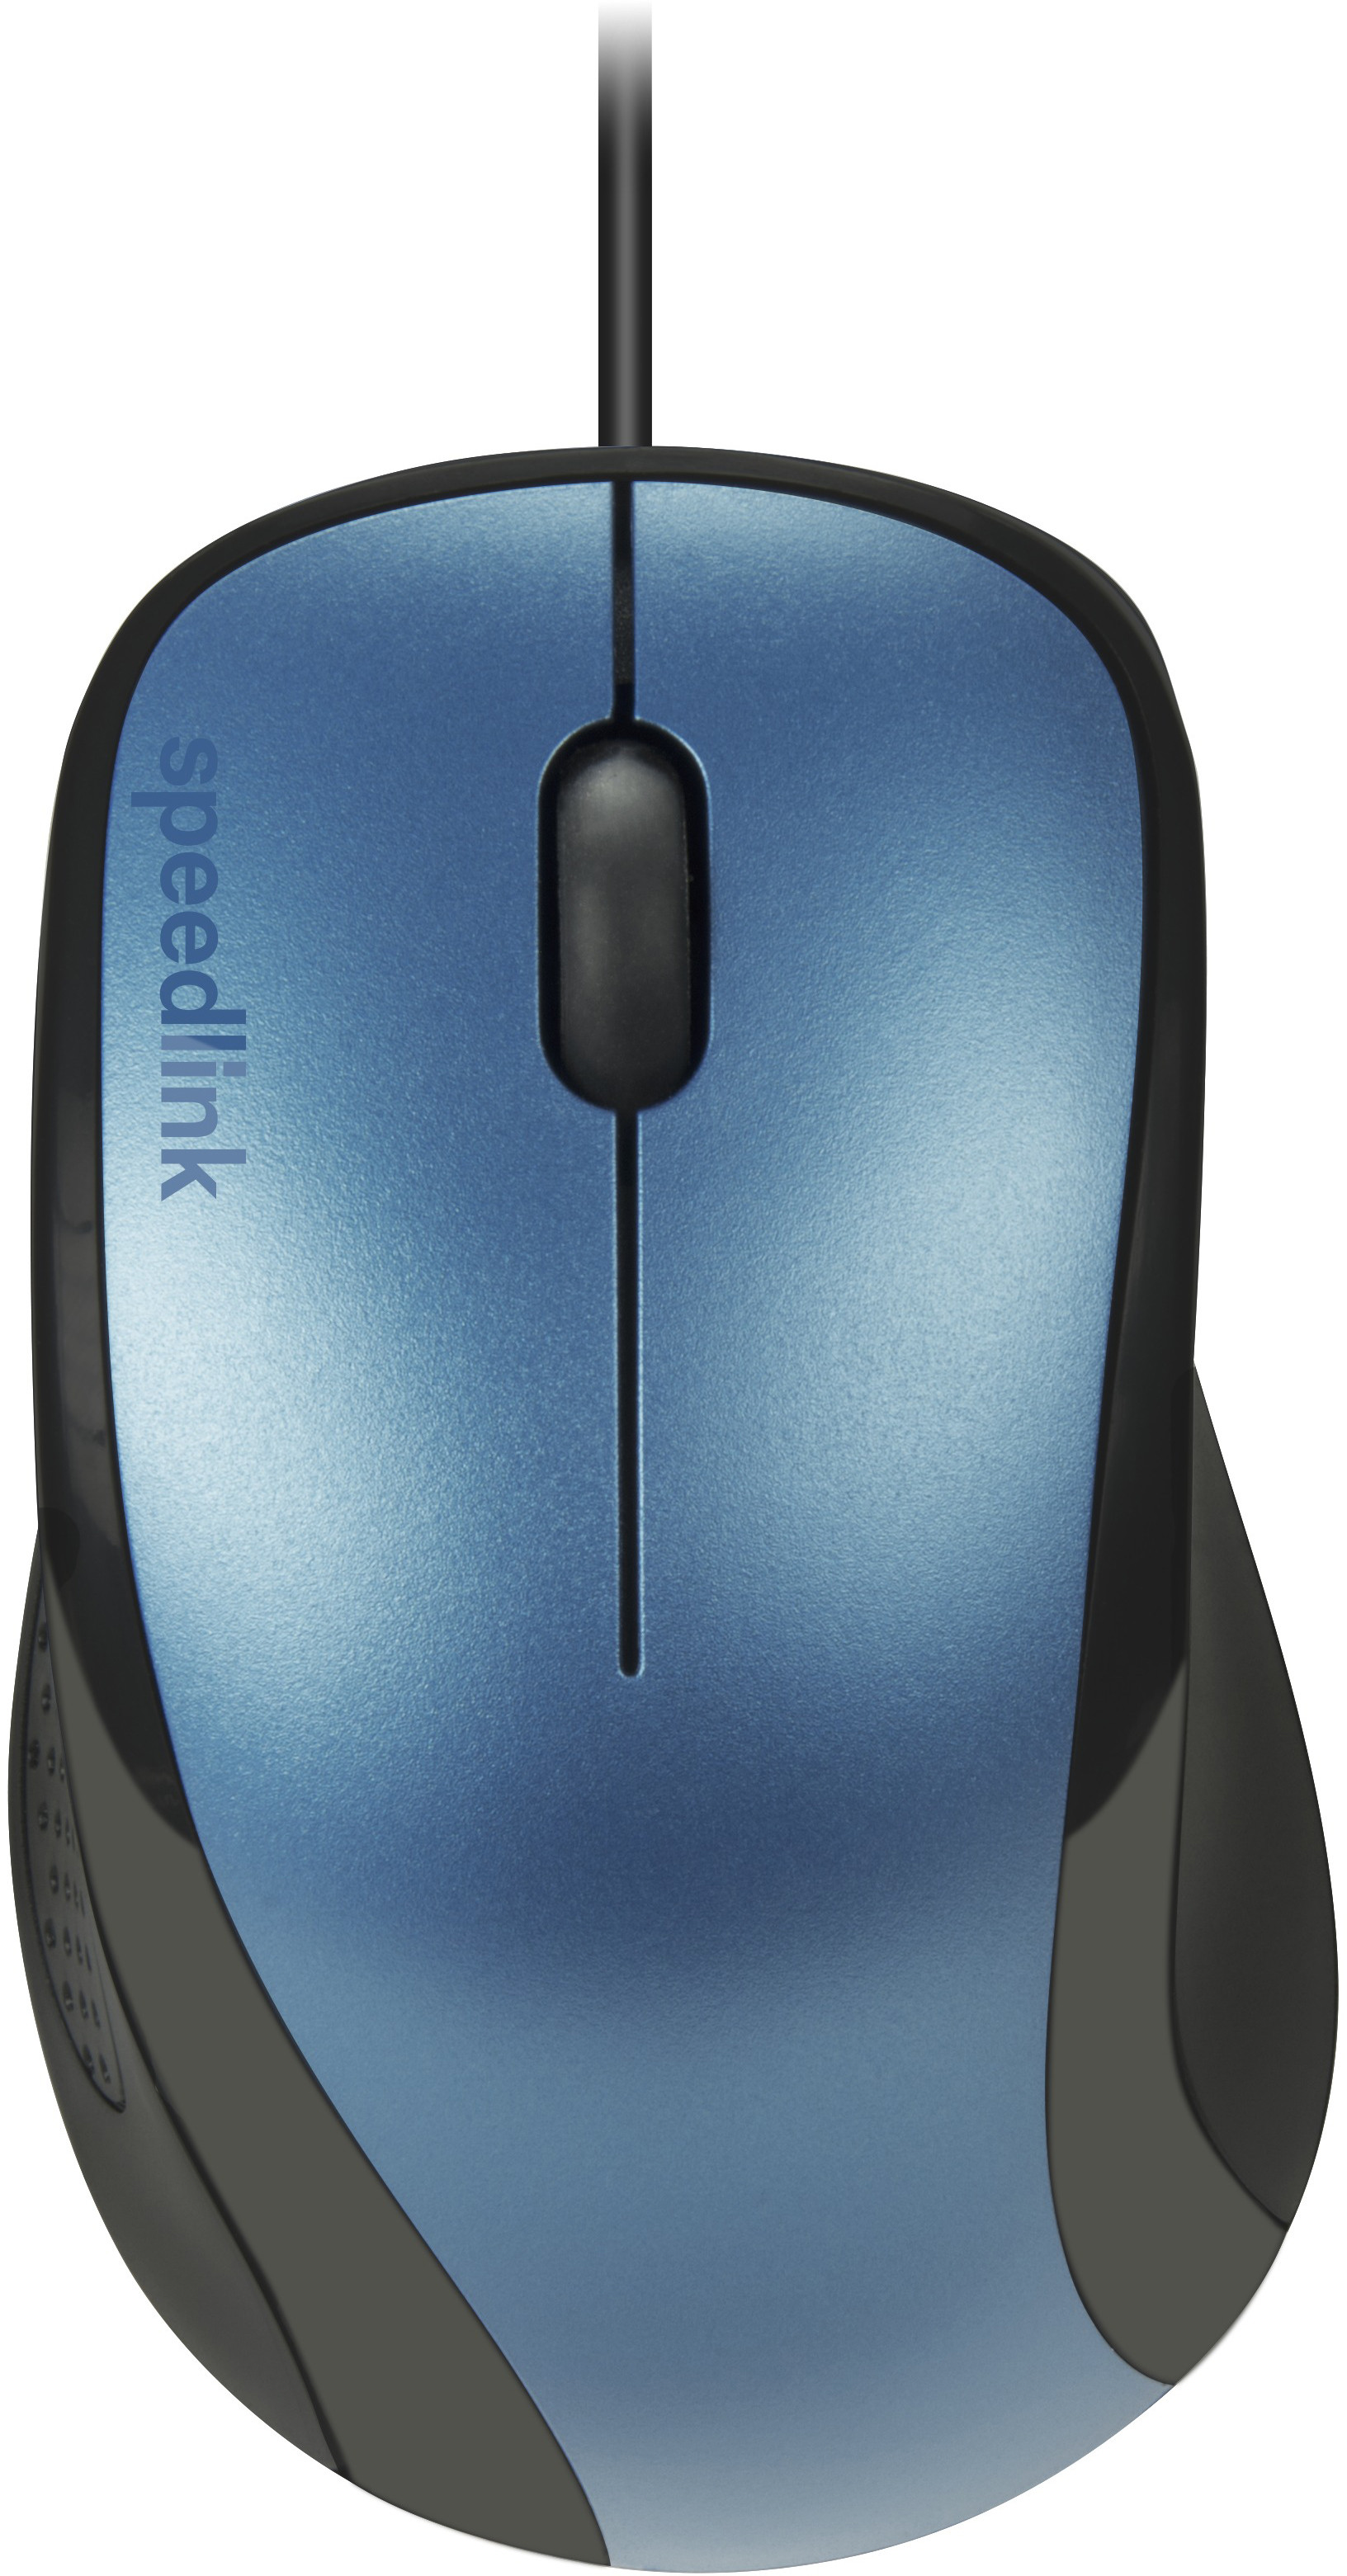 Speedlink hiir Kappa USB, sinine (SL-610011-BE)